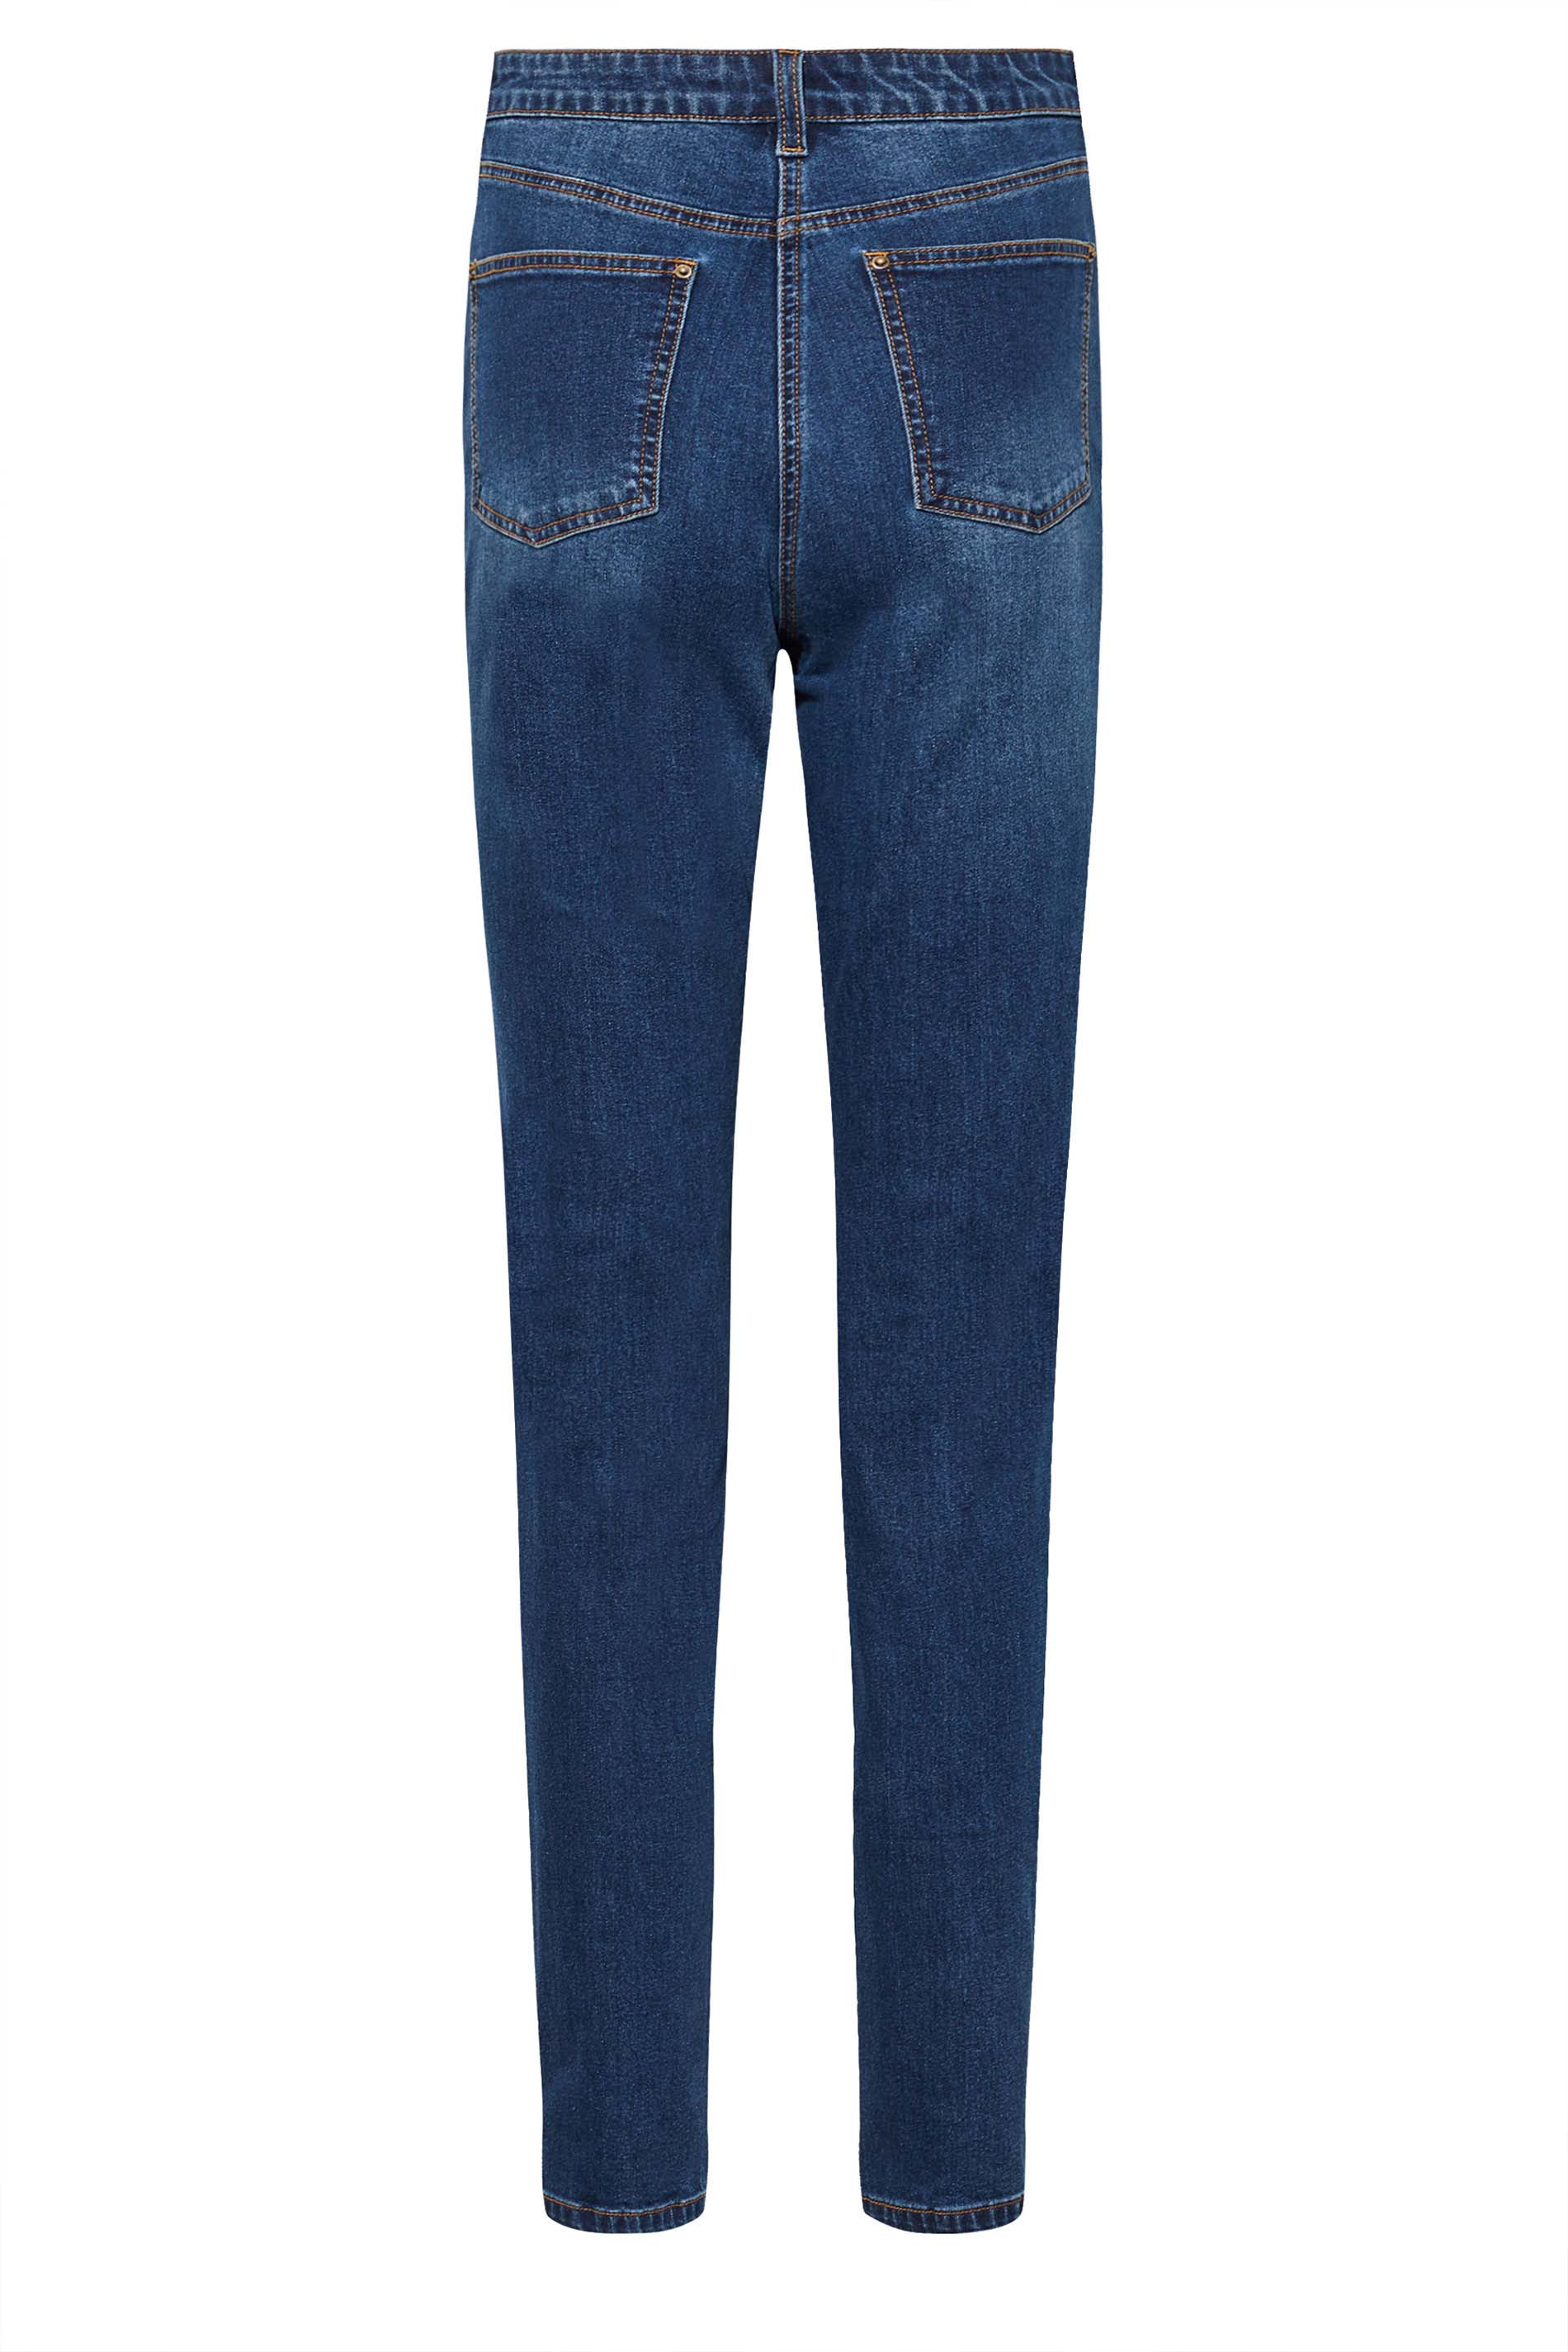 LTS Tall Women's Blue Distressed UNA Mom Jeans | Long Tall Sally